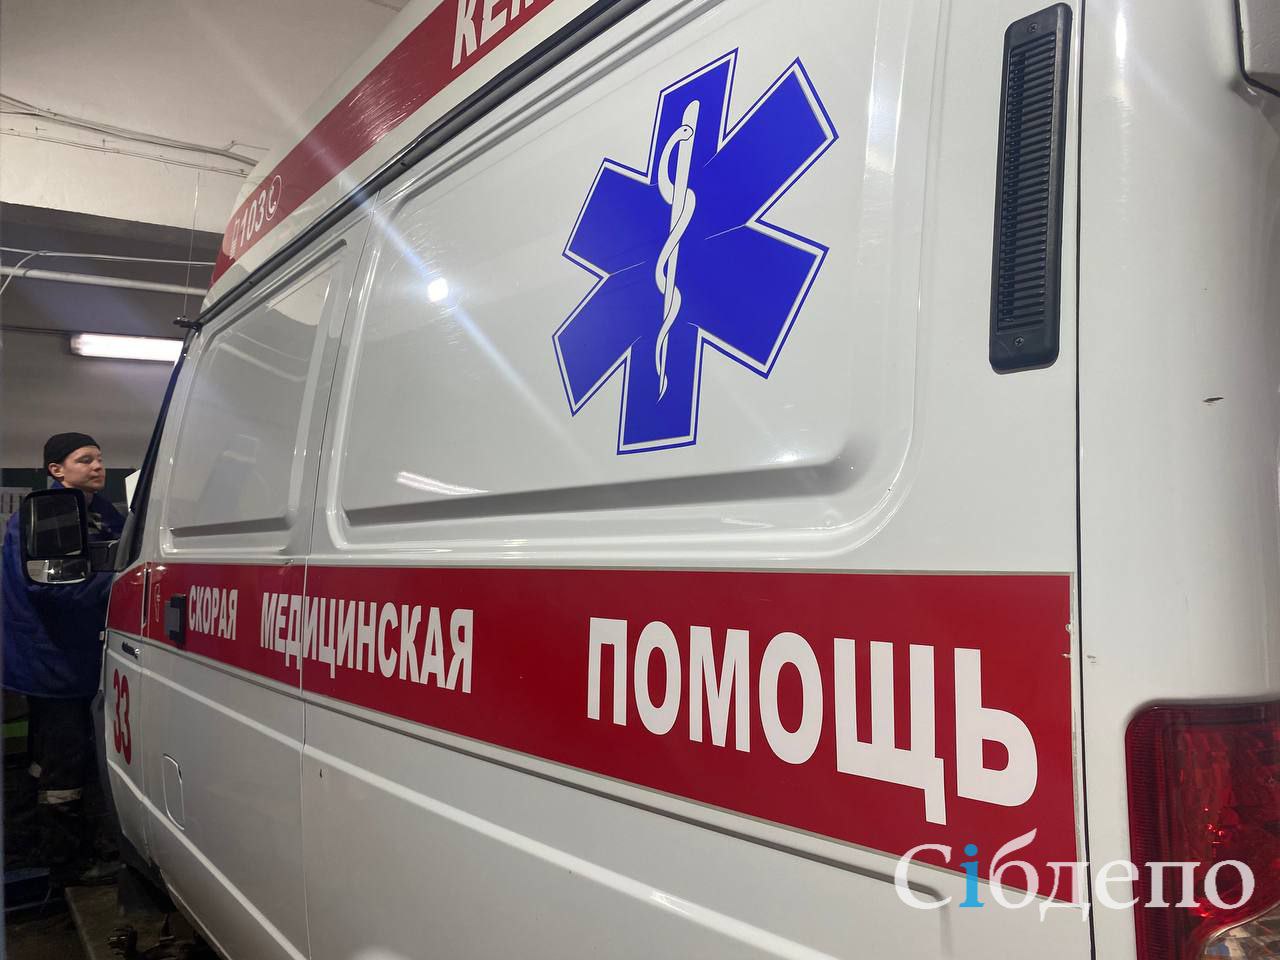 Три человека погибли и два пострадали в жутком ДТП в российском регионе